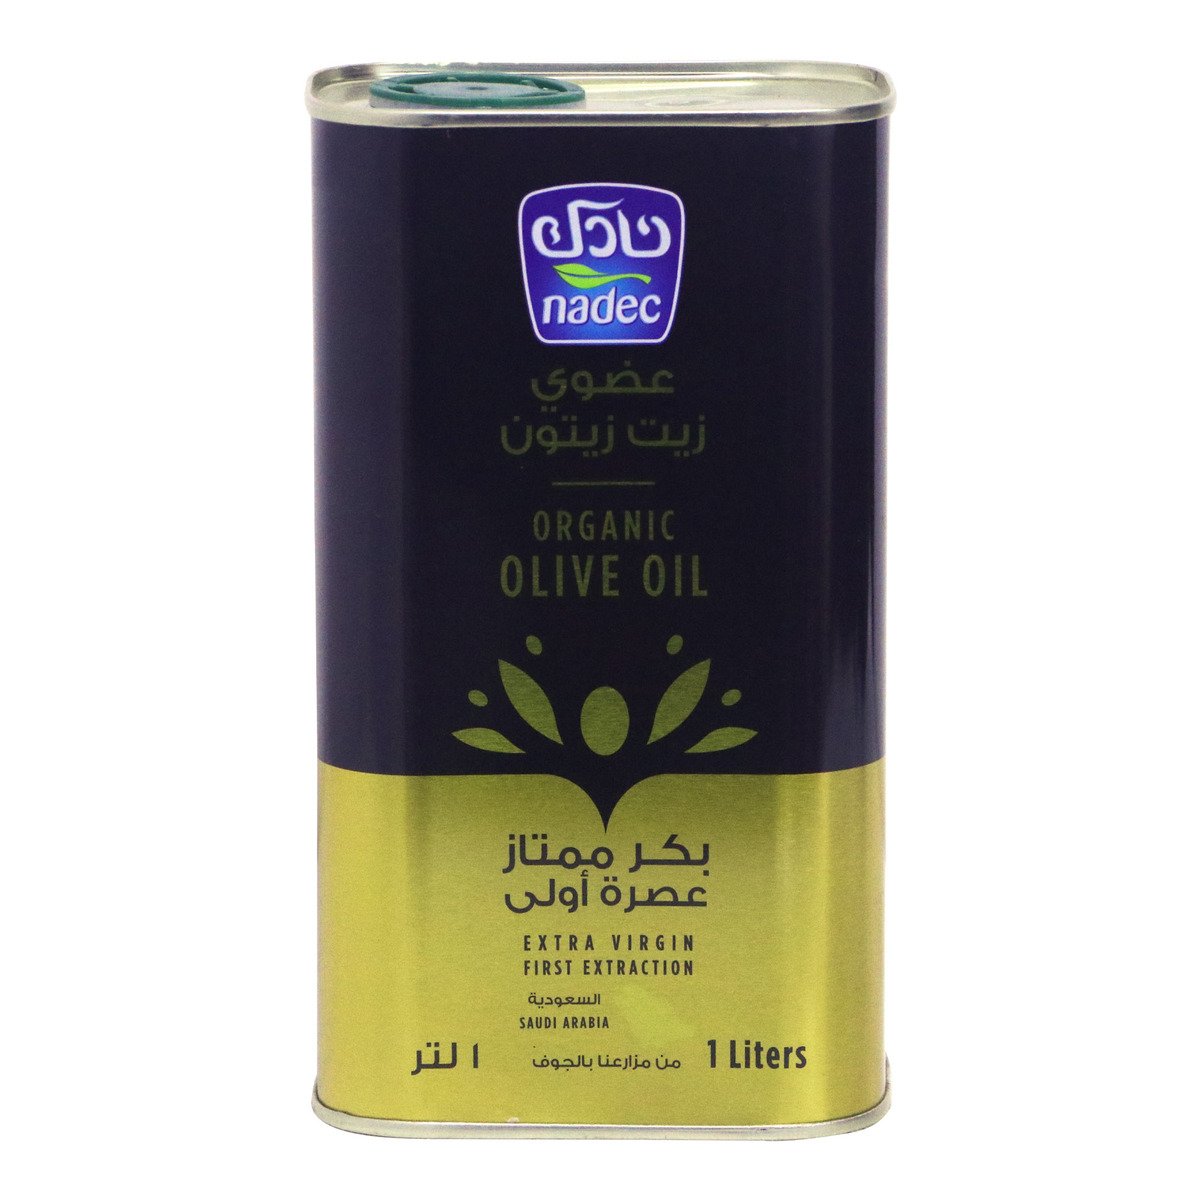 اشتري قم بشراء نادك زيت زيتون بكر ممتاز عضوي 1 لتر Online at Best Price من الموقع - من لولو هايبر ماركت Olive Oil في السعودية